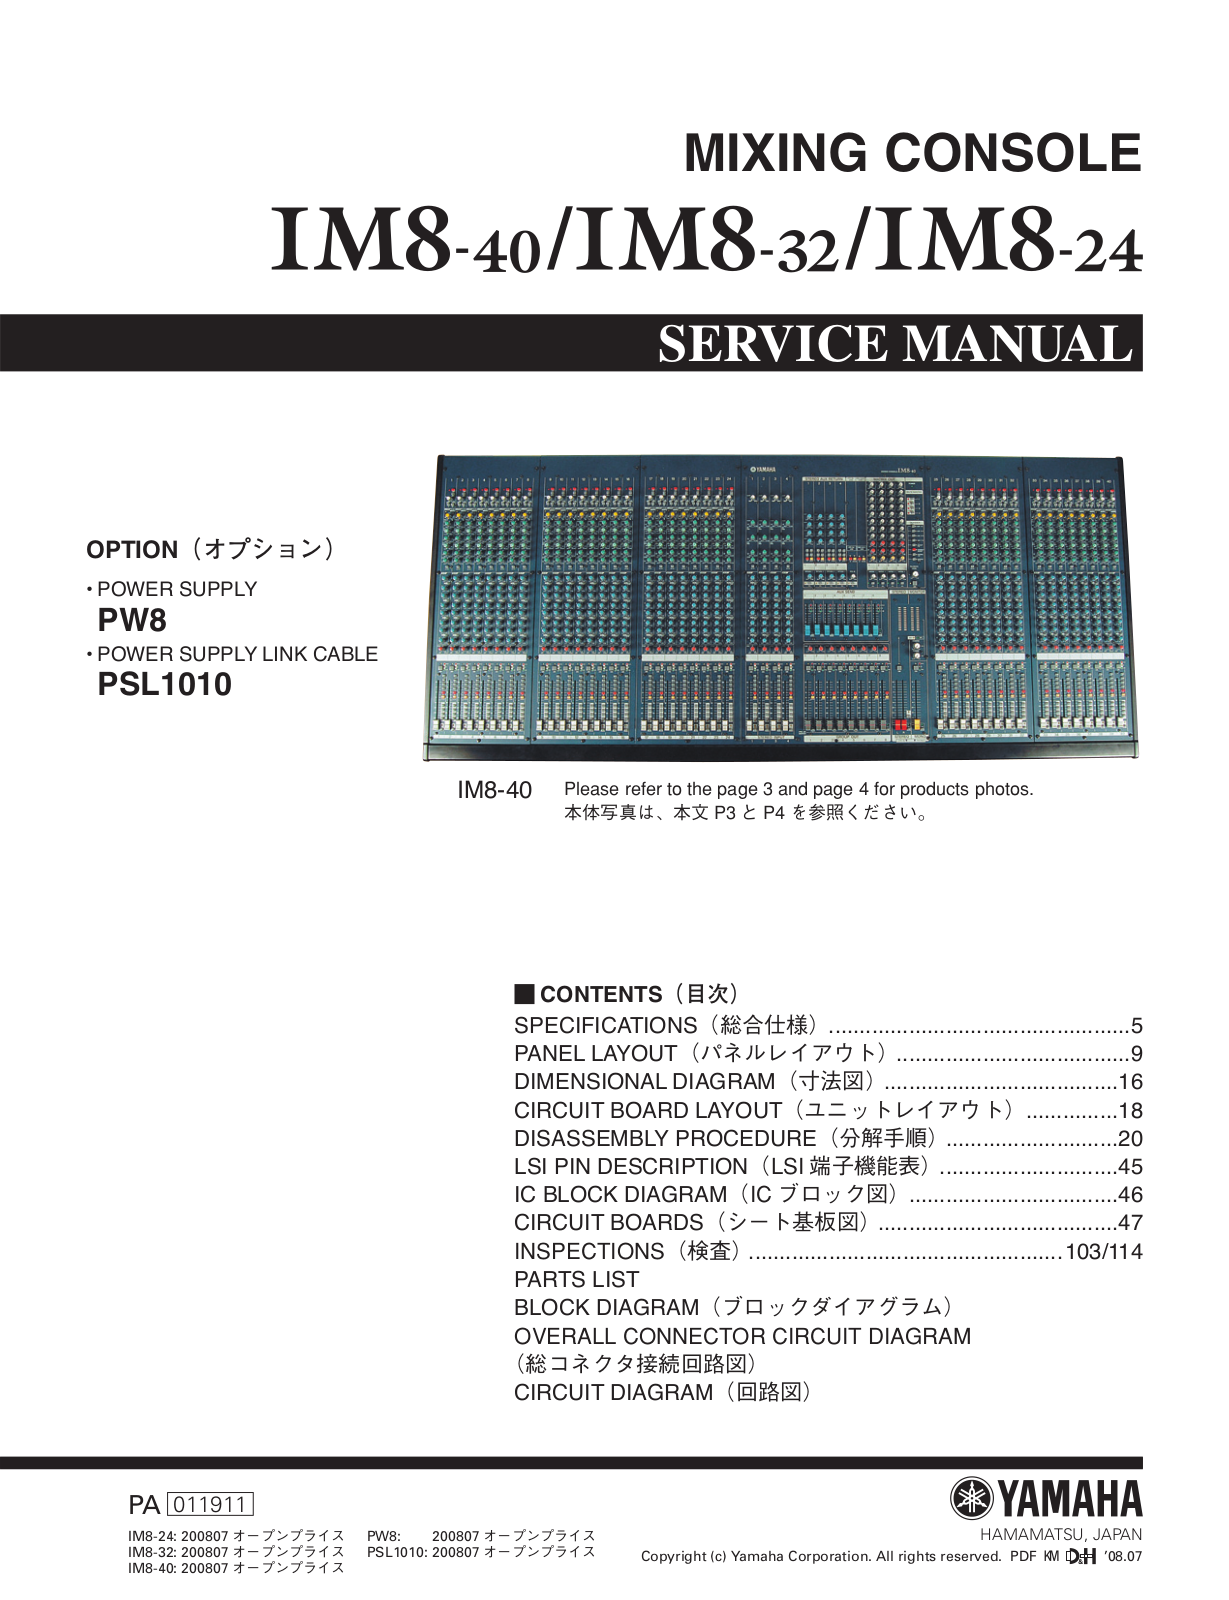 Yamaha IM-8-24, IM-8-32, IM-8-40 Service manual